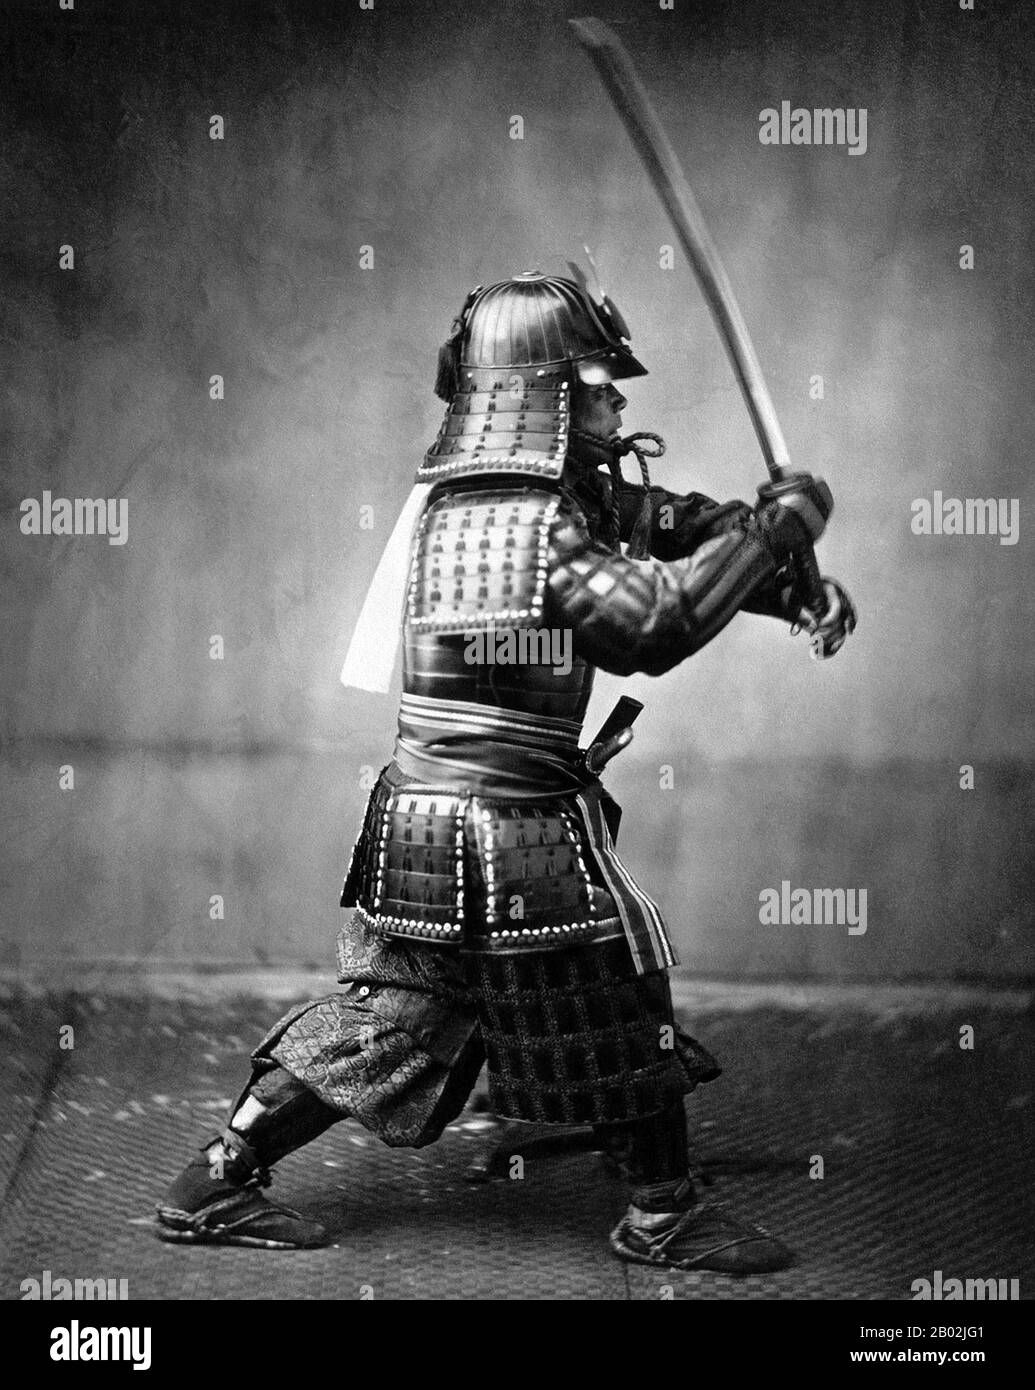 Samurai est le terme de la noblesse militaire du Japon pré-industriel. À la fin du XIIe siècle, le samouraï est devenu presque entièrement synonyme de bushi, et le mot était étroitement associé aux échelons moyen et supérieur de la classe guerrière. Le samouraï a suivi un ensemble de règles qui sont venus à être connu sous le nom de Bushidō. Bien qu'ils aient compté moins de dix pour cent de la population japonaise, les enseignements du samouraï peuvent encore être trouvés aujourd'hui dans la vie quotidienne et dans les arts martiaux comme Kendō, ce qui signifie le chemin de l'épée. Banque D'Images